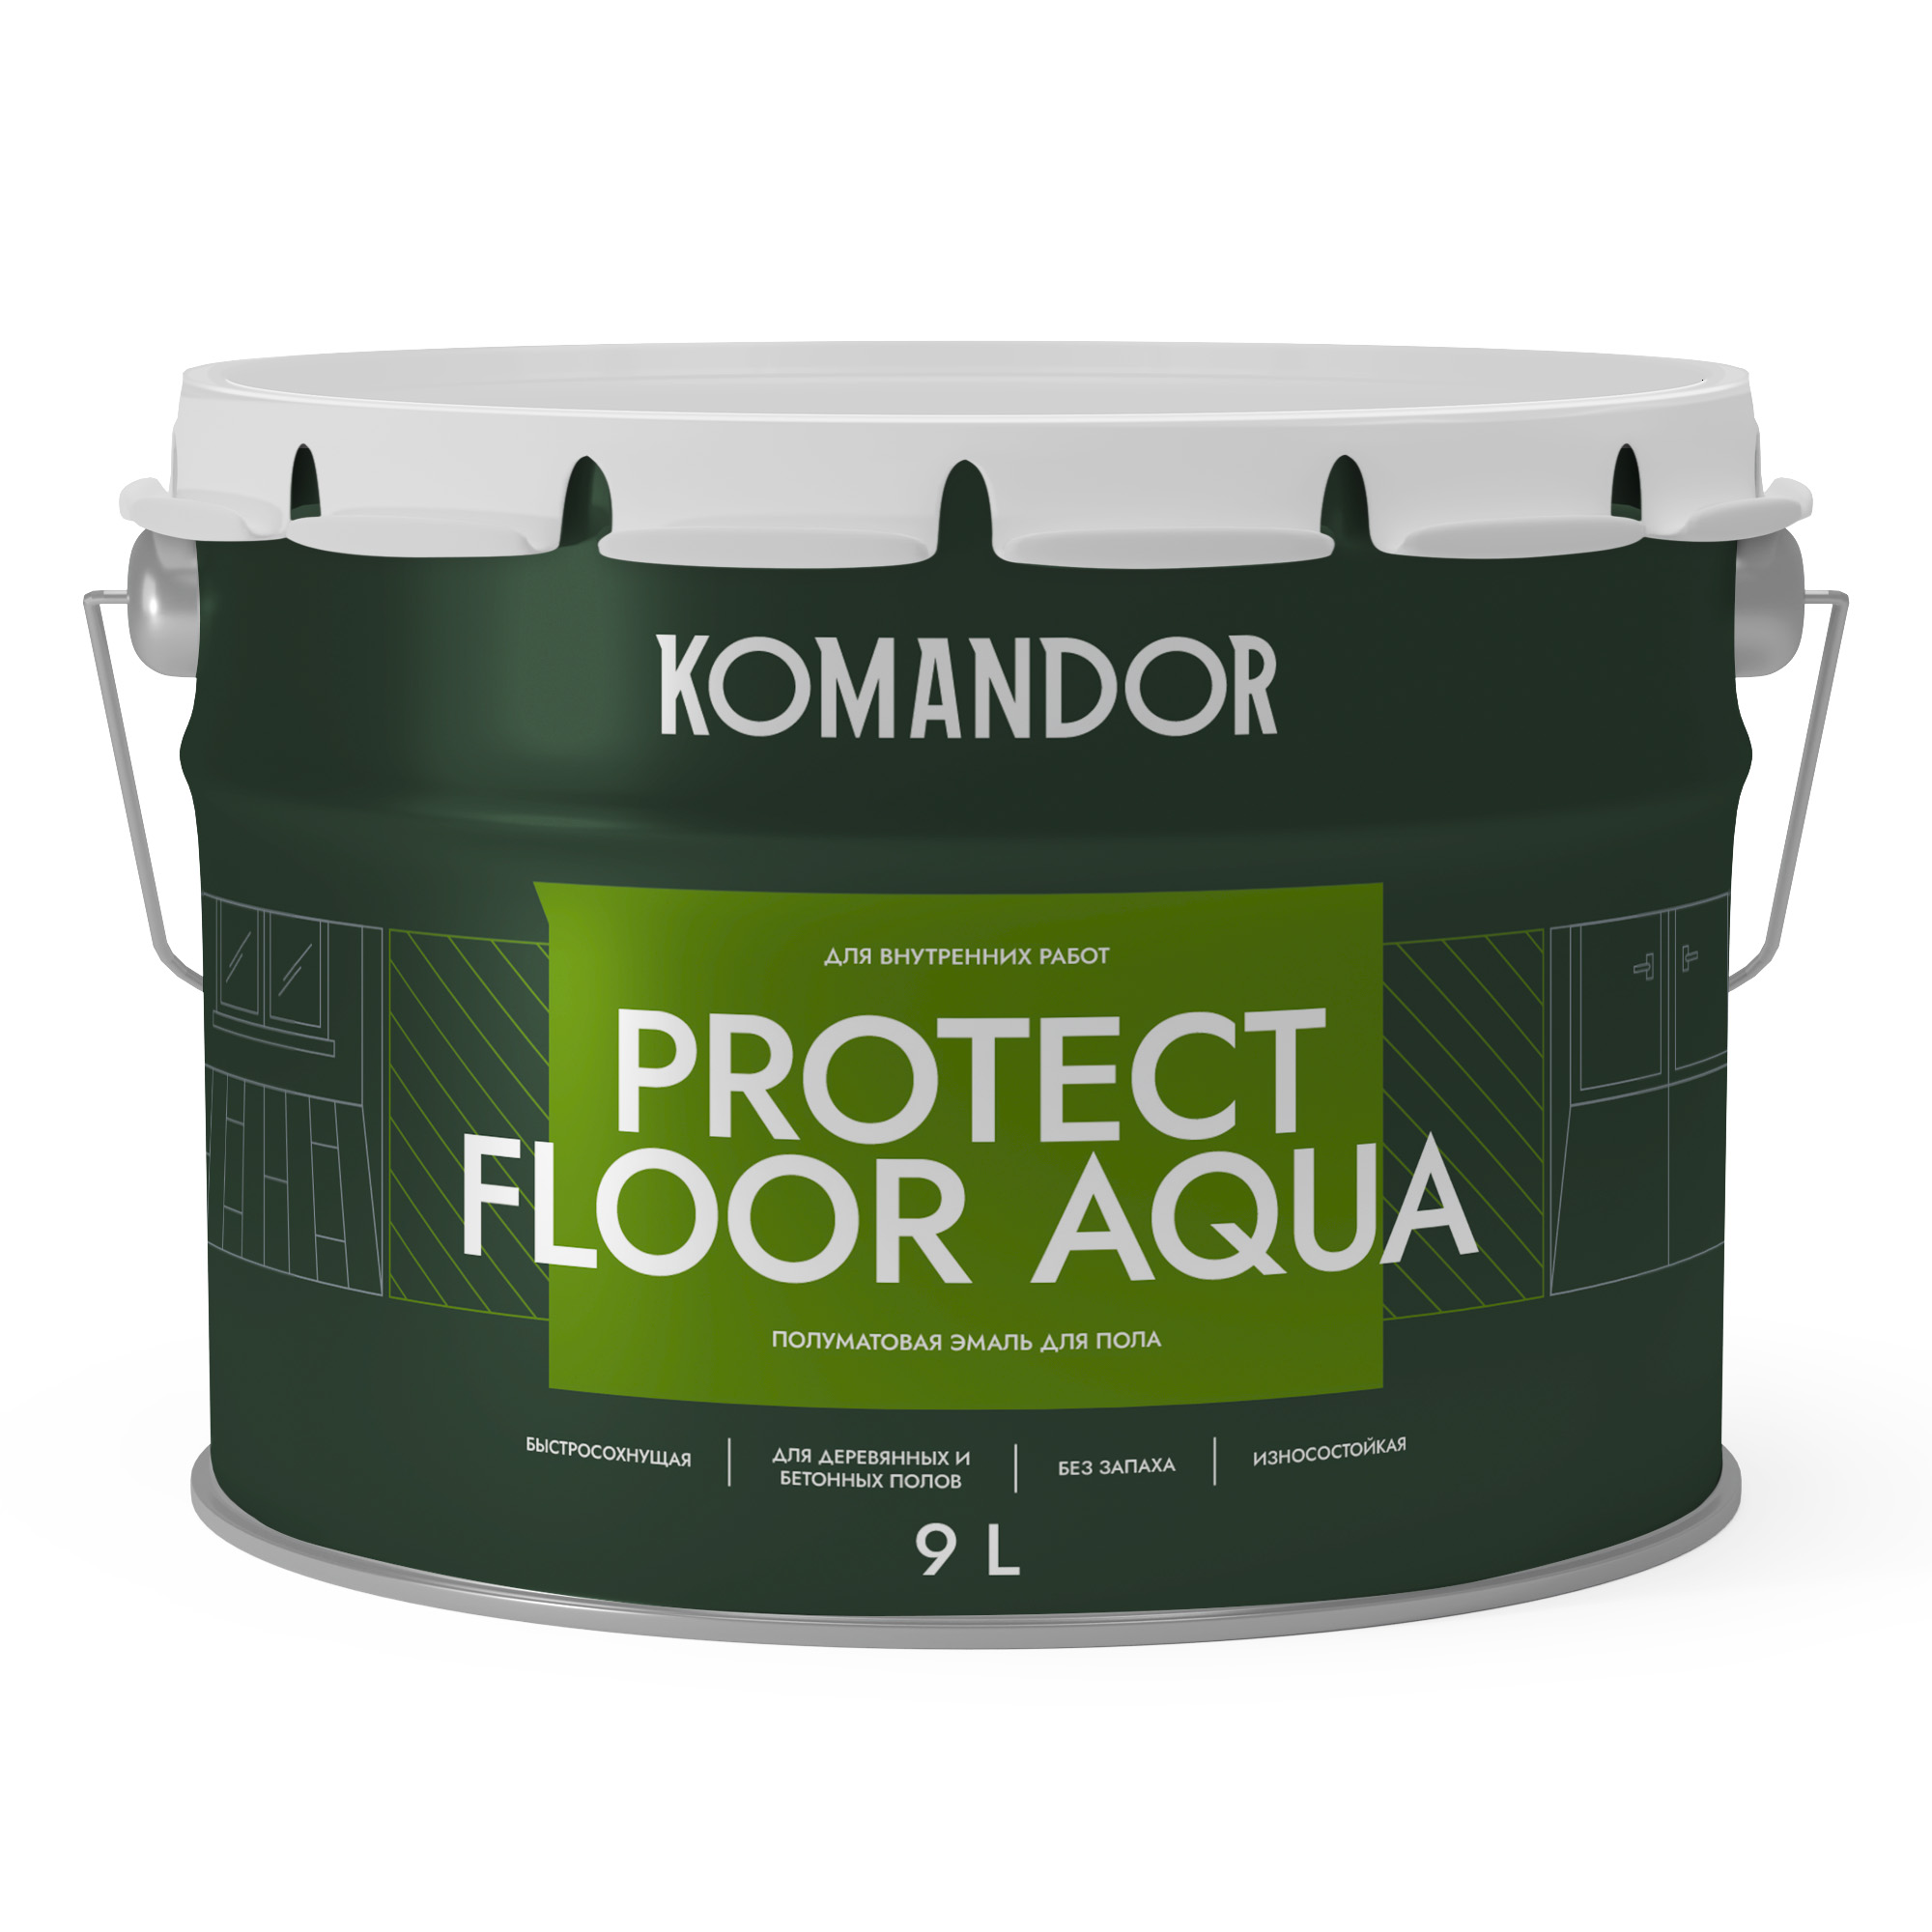 Эмаль для пола и лестниц Komandor Protect Floor Aqua C S1314003010 полуматовая 9 л